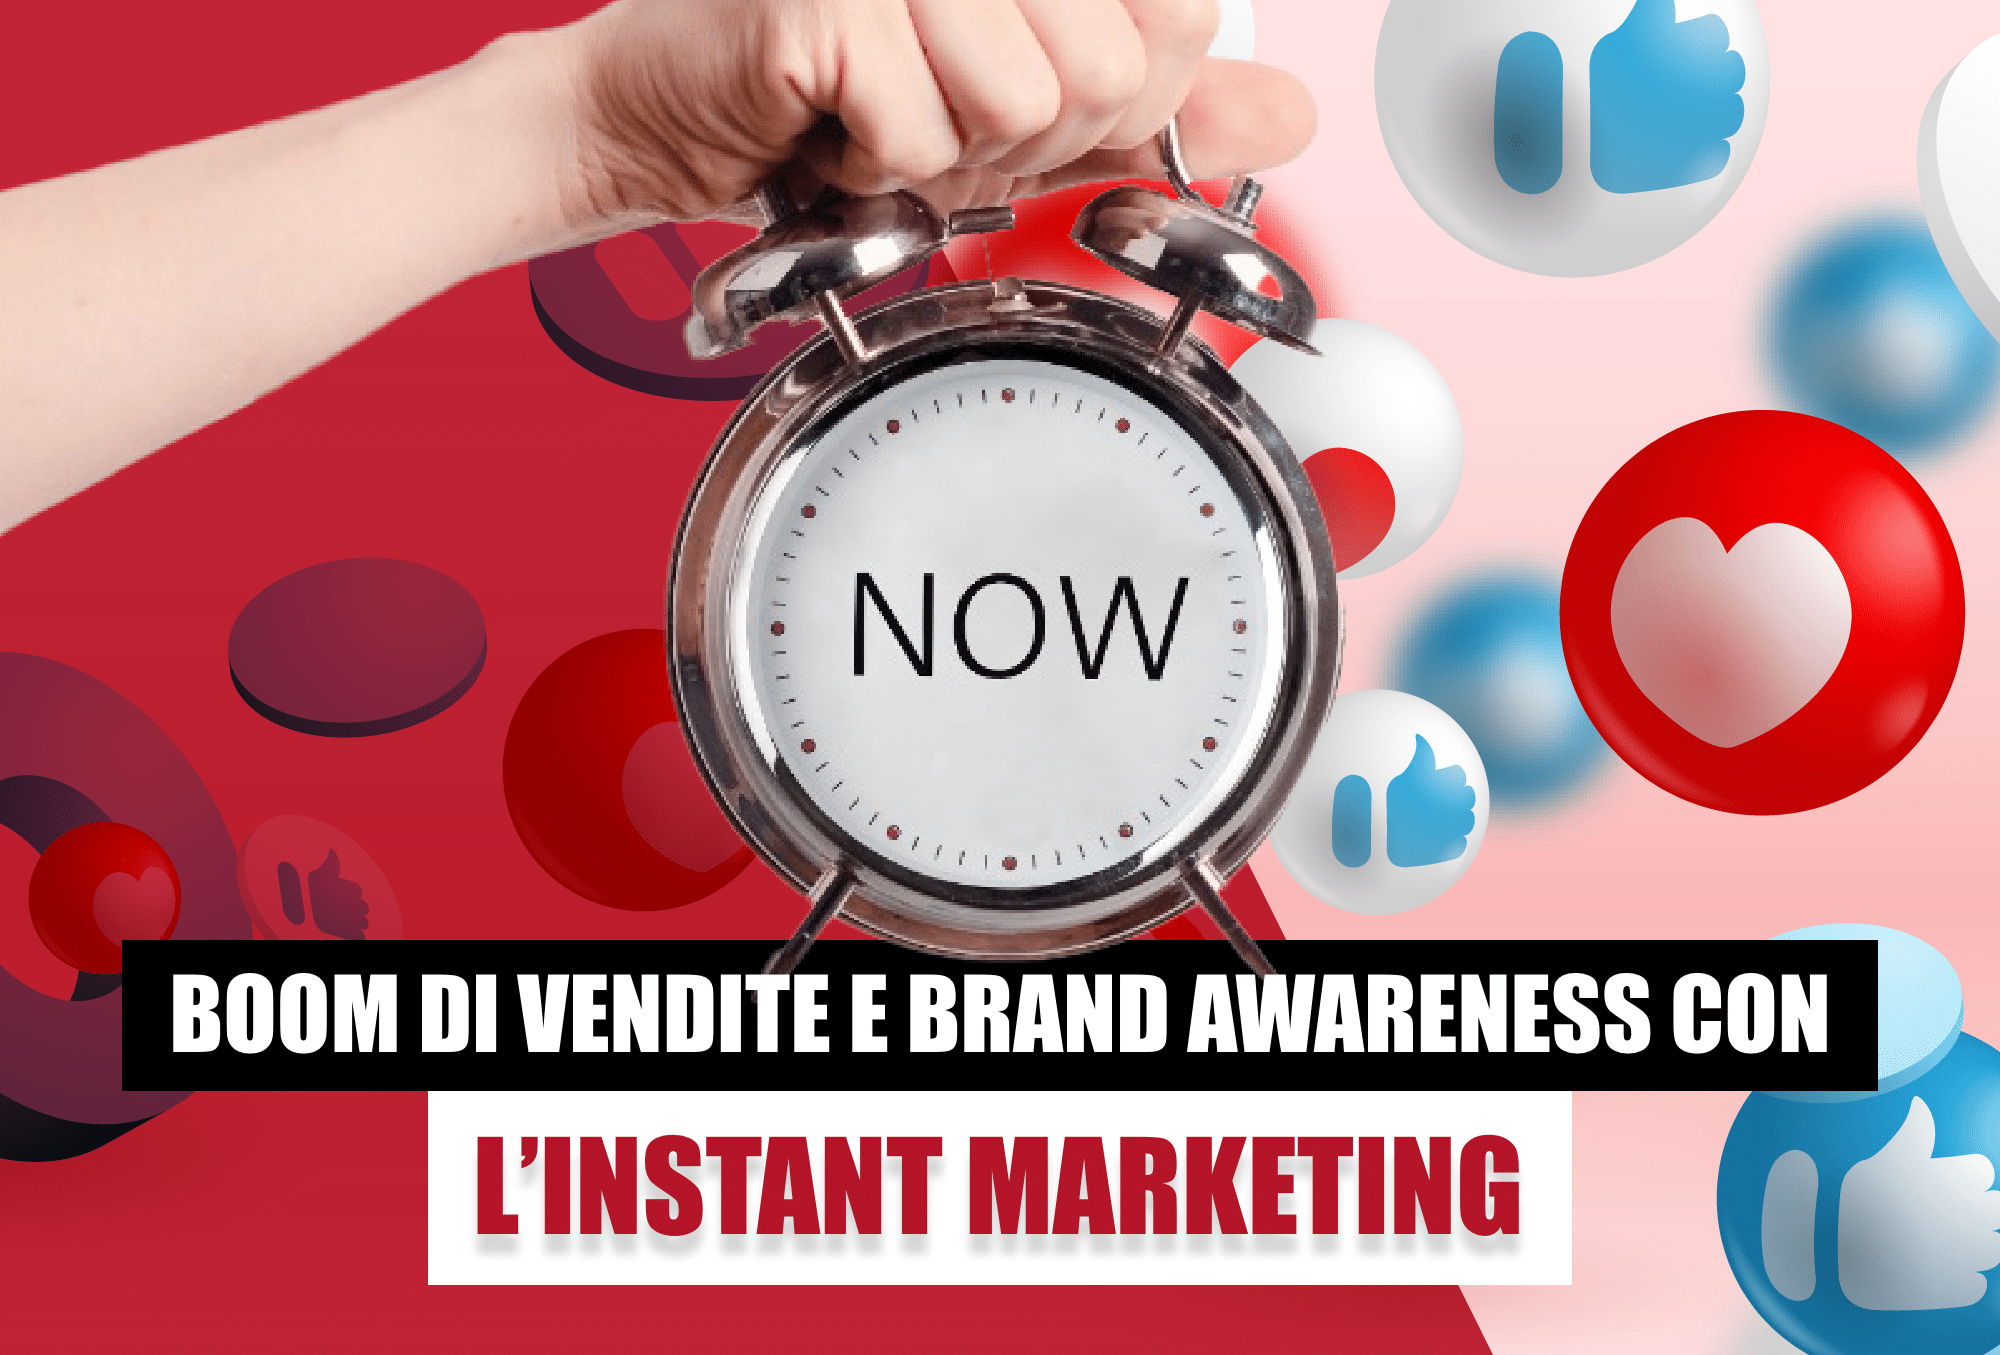 L'Instant Marketing aiuta ad attrarre il target. L’obiettivo può essere la vendita di un articolo specifico, oppure, la brand awareness. Scopri di più!